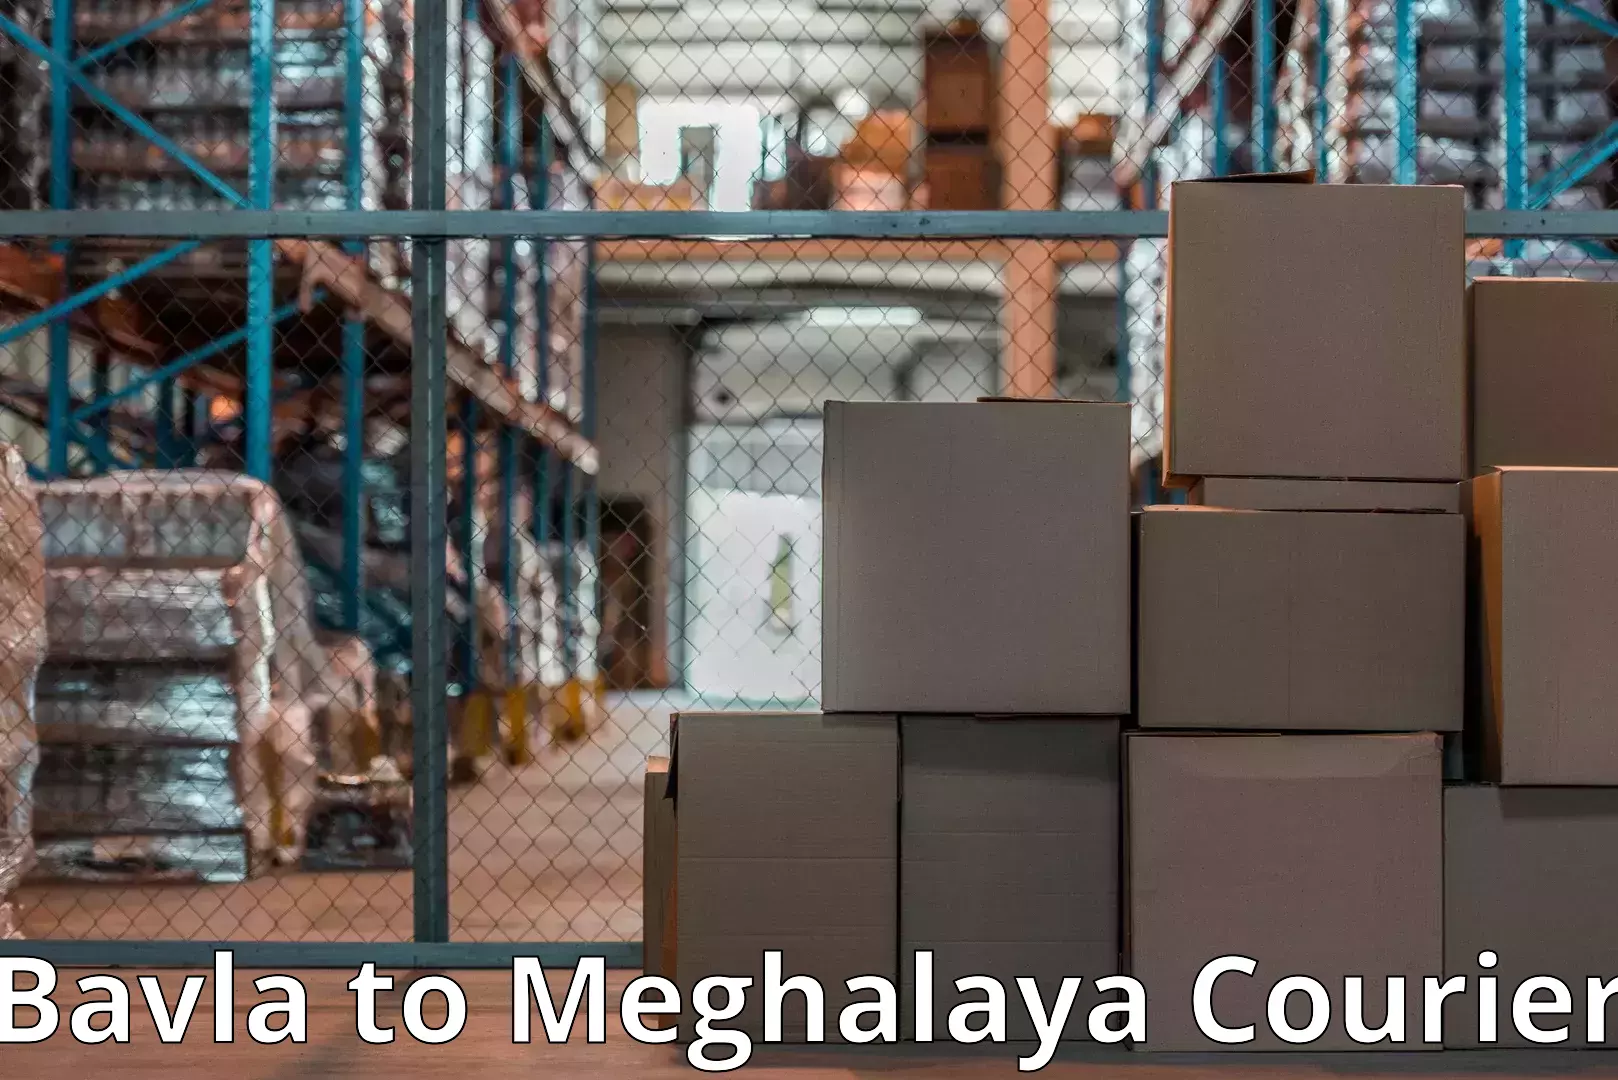 Home moving specialists Bavla to Meghalaya